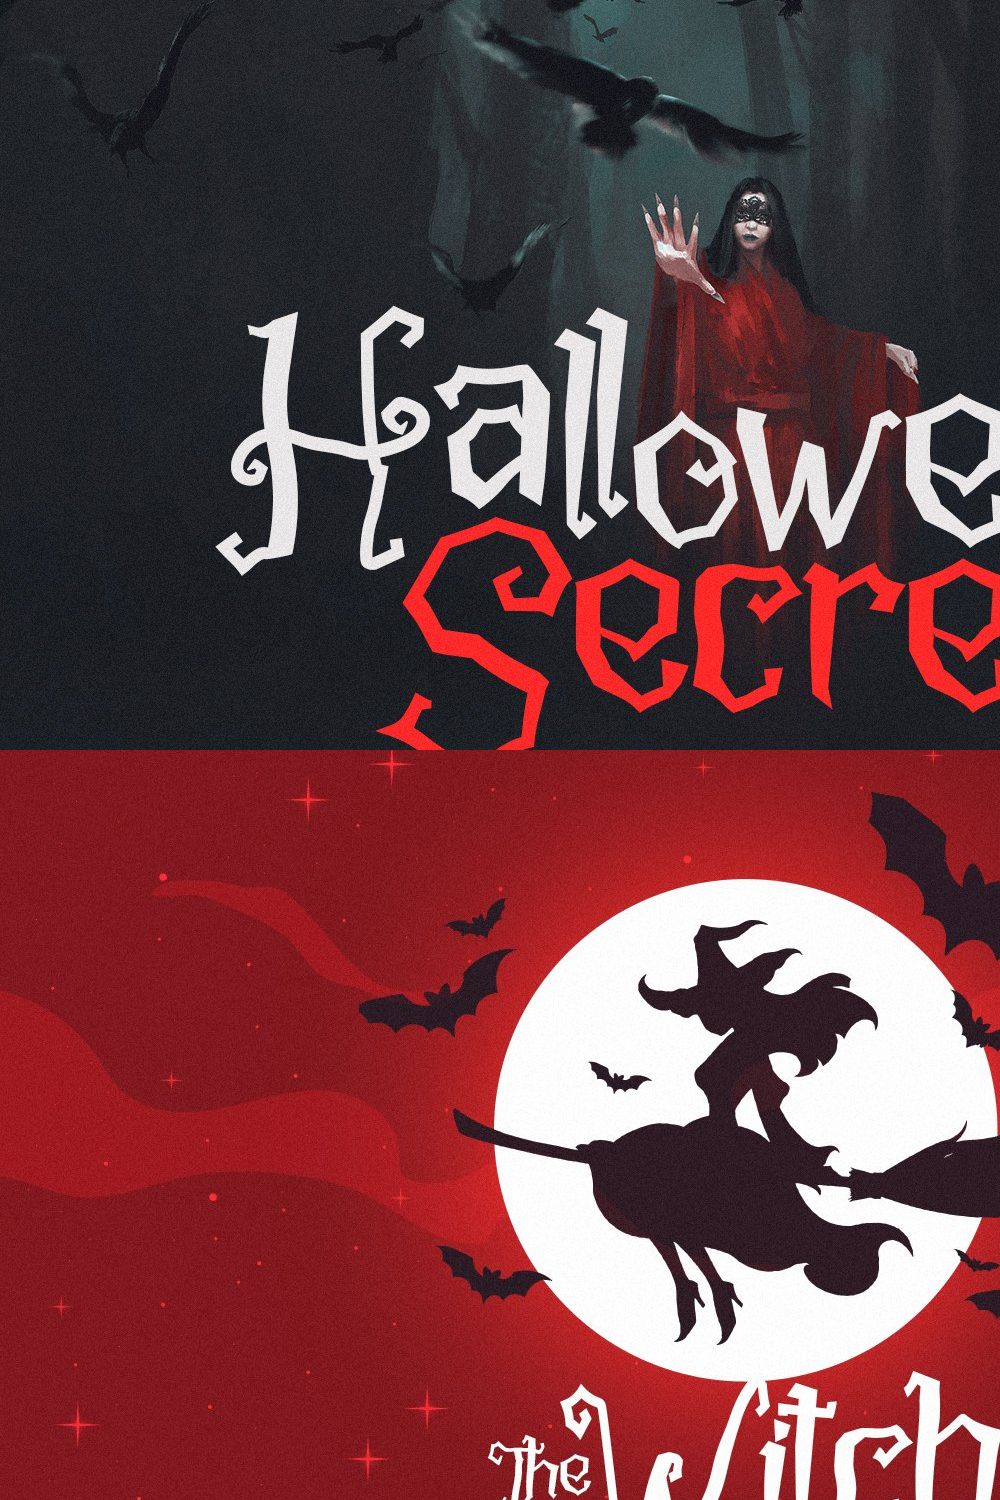 Halloween Secret - Spooky Mist Font pinterest preview image.